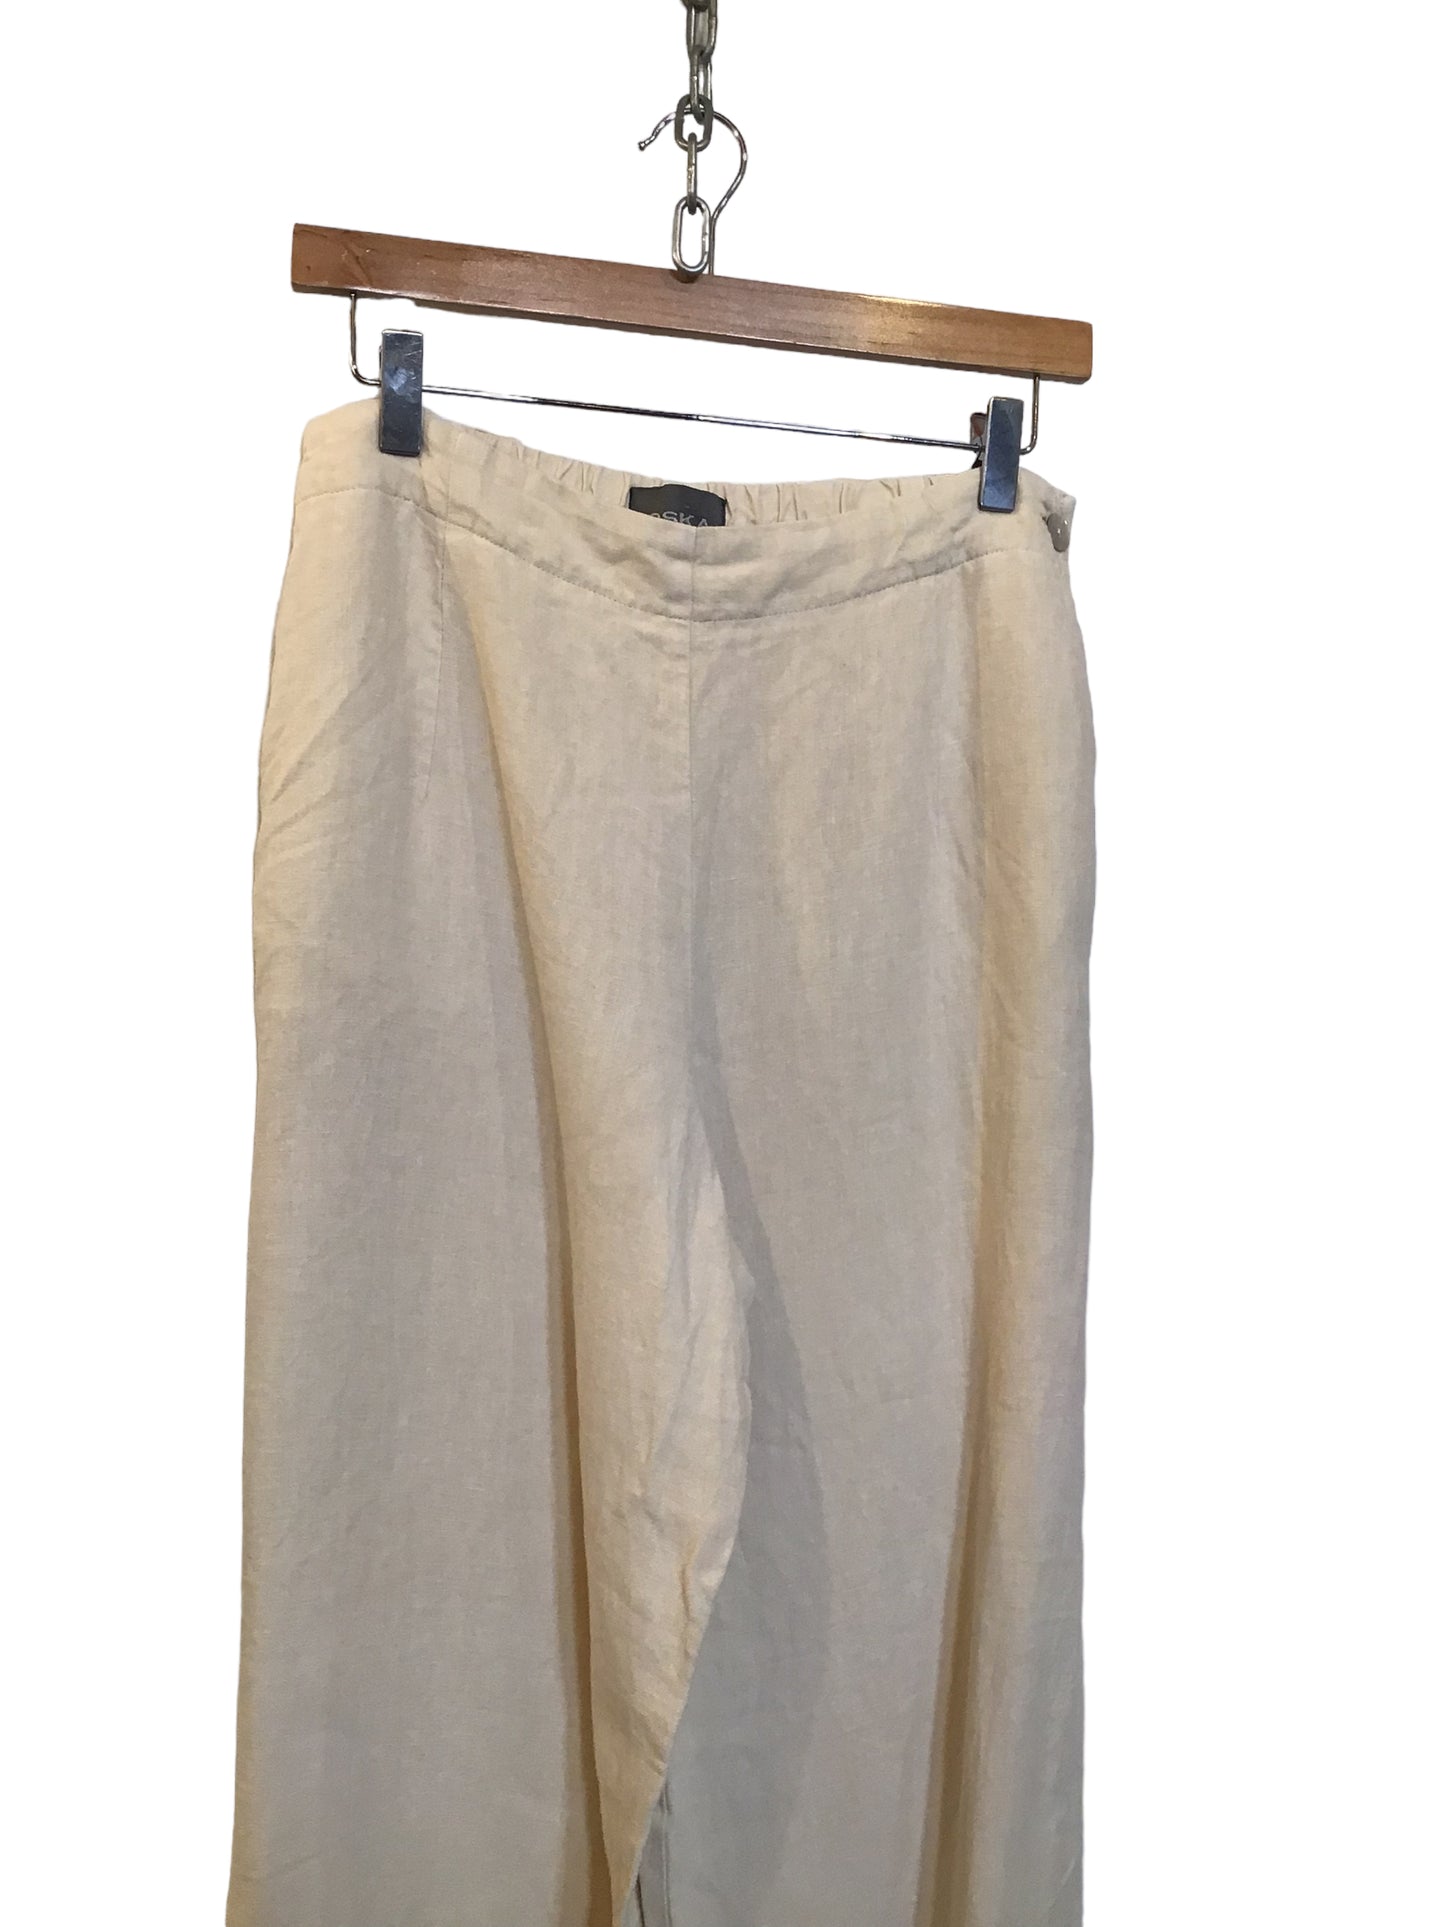 Osaka Trousers (Size L)